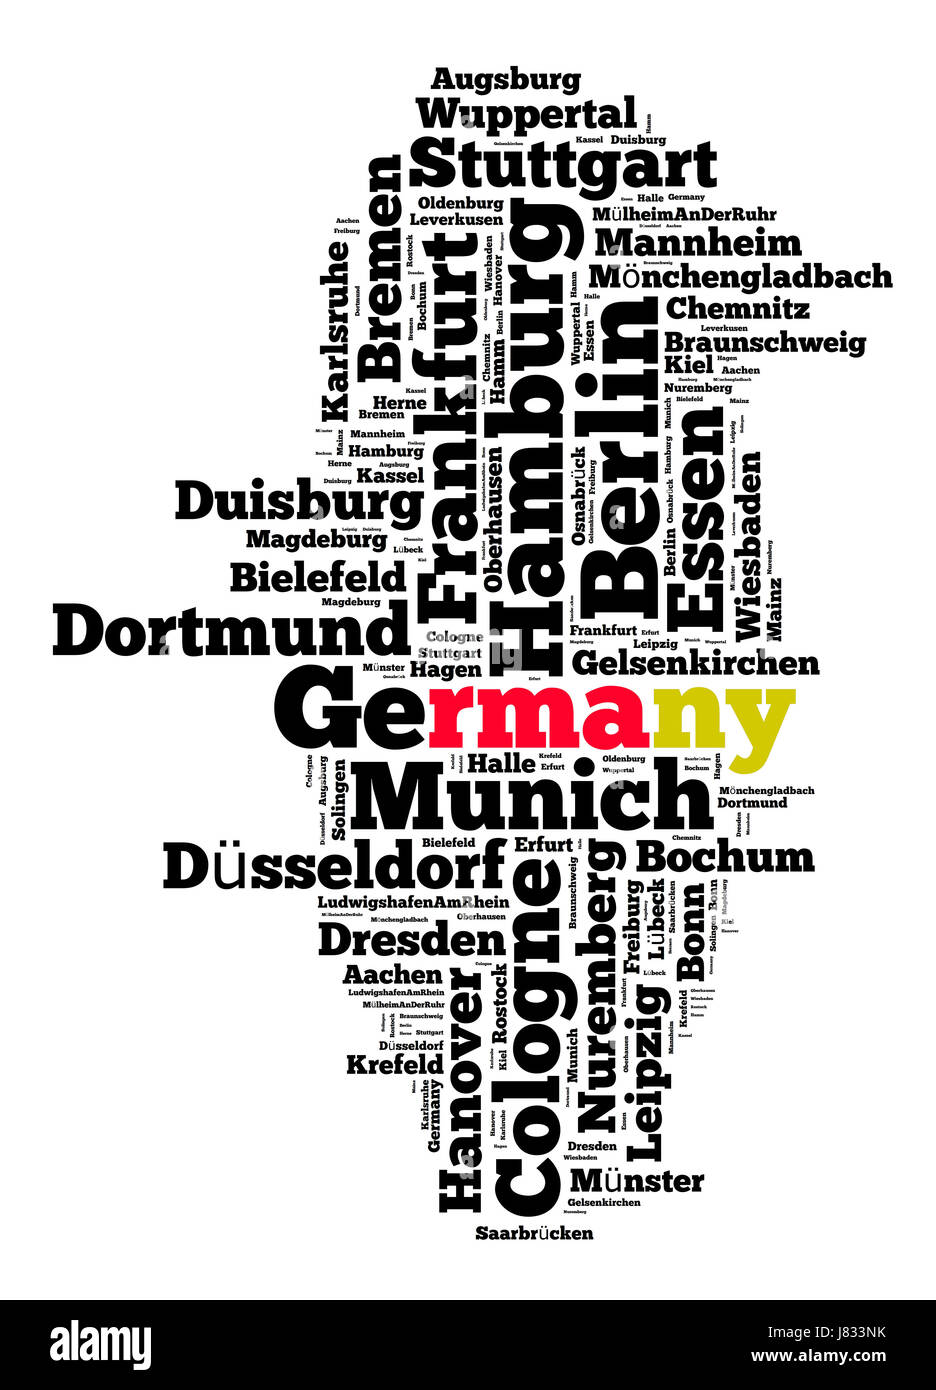 Orte in Deutschland-Wort-Cloud-Konzept Stockfoto